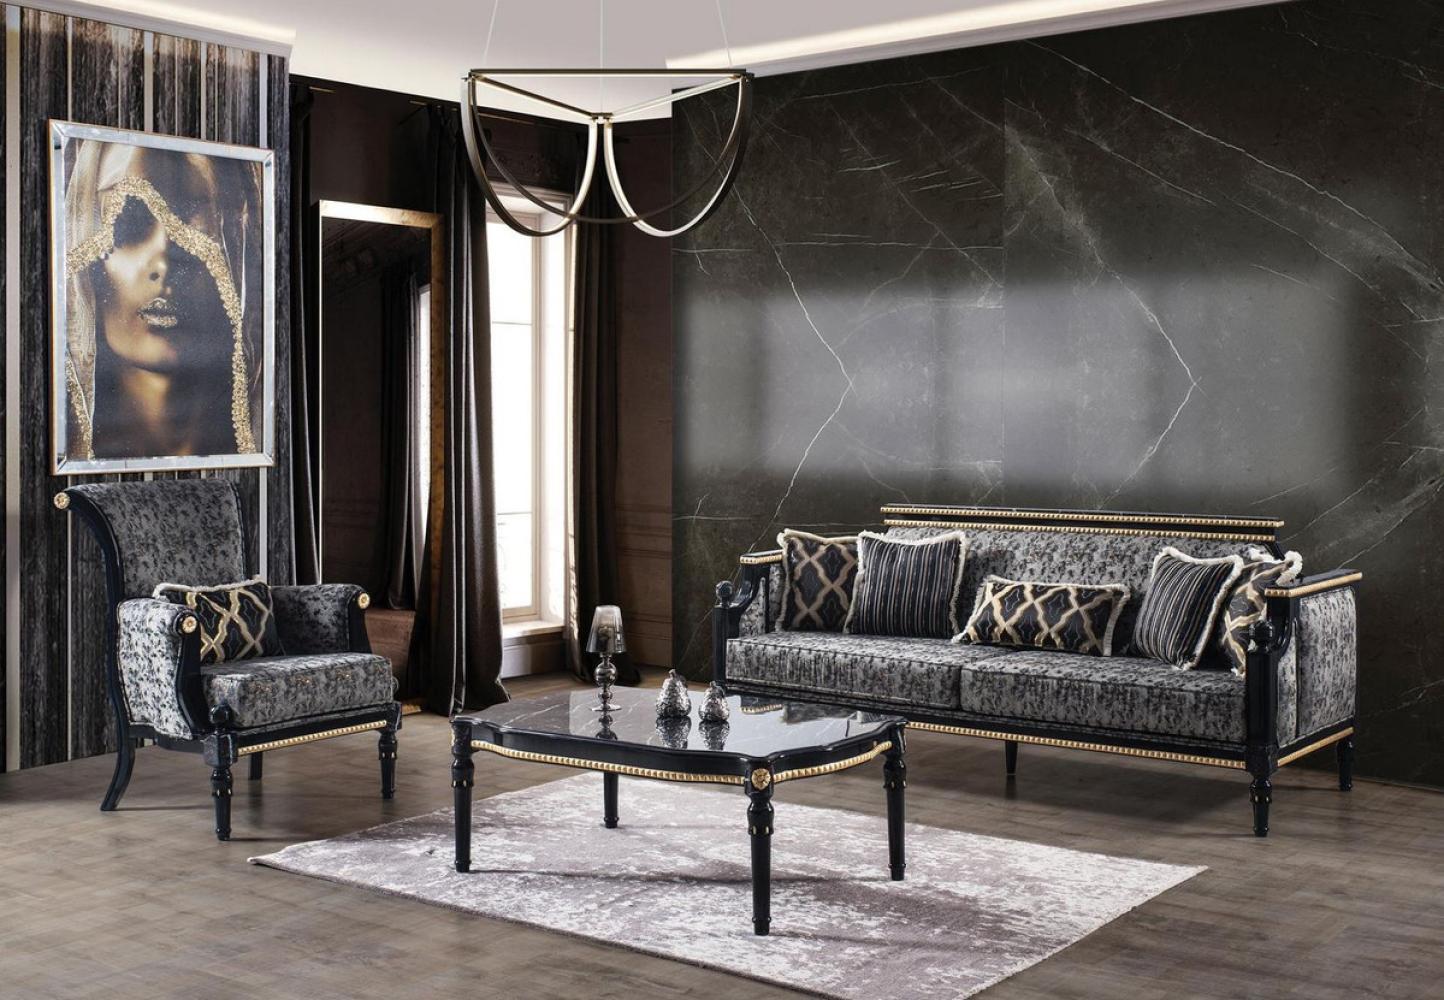 Casa Padrino Luxus Barock Wohnzimmer Set Grau / Schwarz / Gold - 2 Sofas & 2 Sessel & 1 Couchtisch mit Glasplatte in Marmoroptik - Wohnzimmer Möbel im Barockstil - Edel & Prunkvoll Bild 1